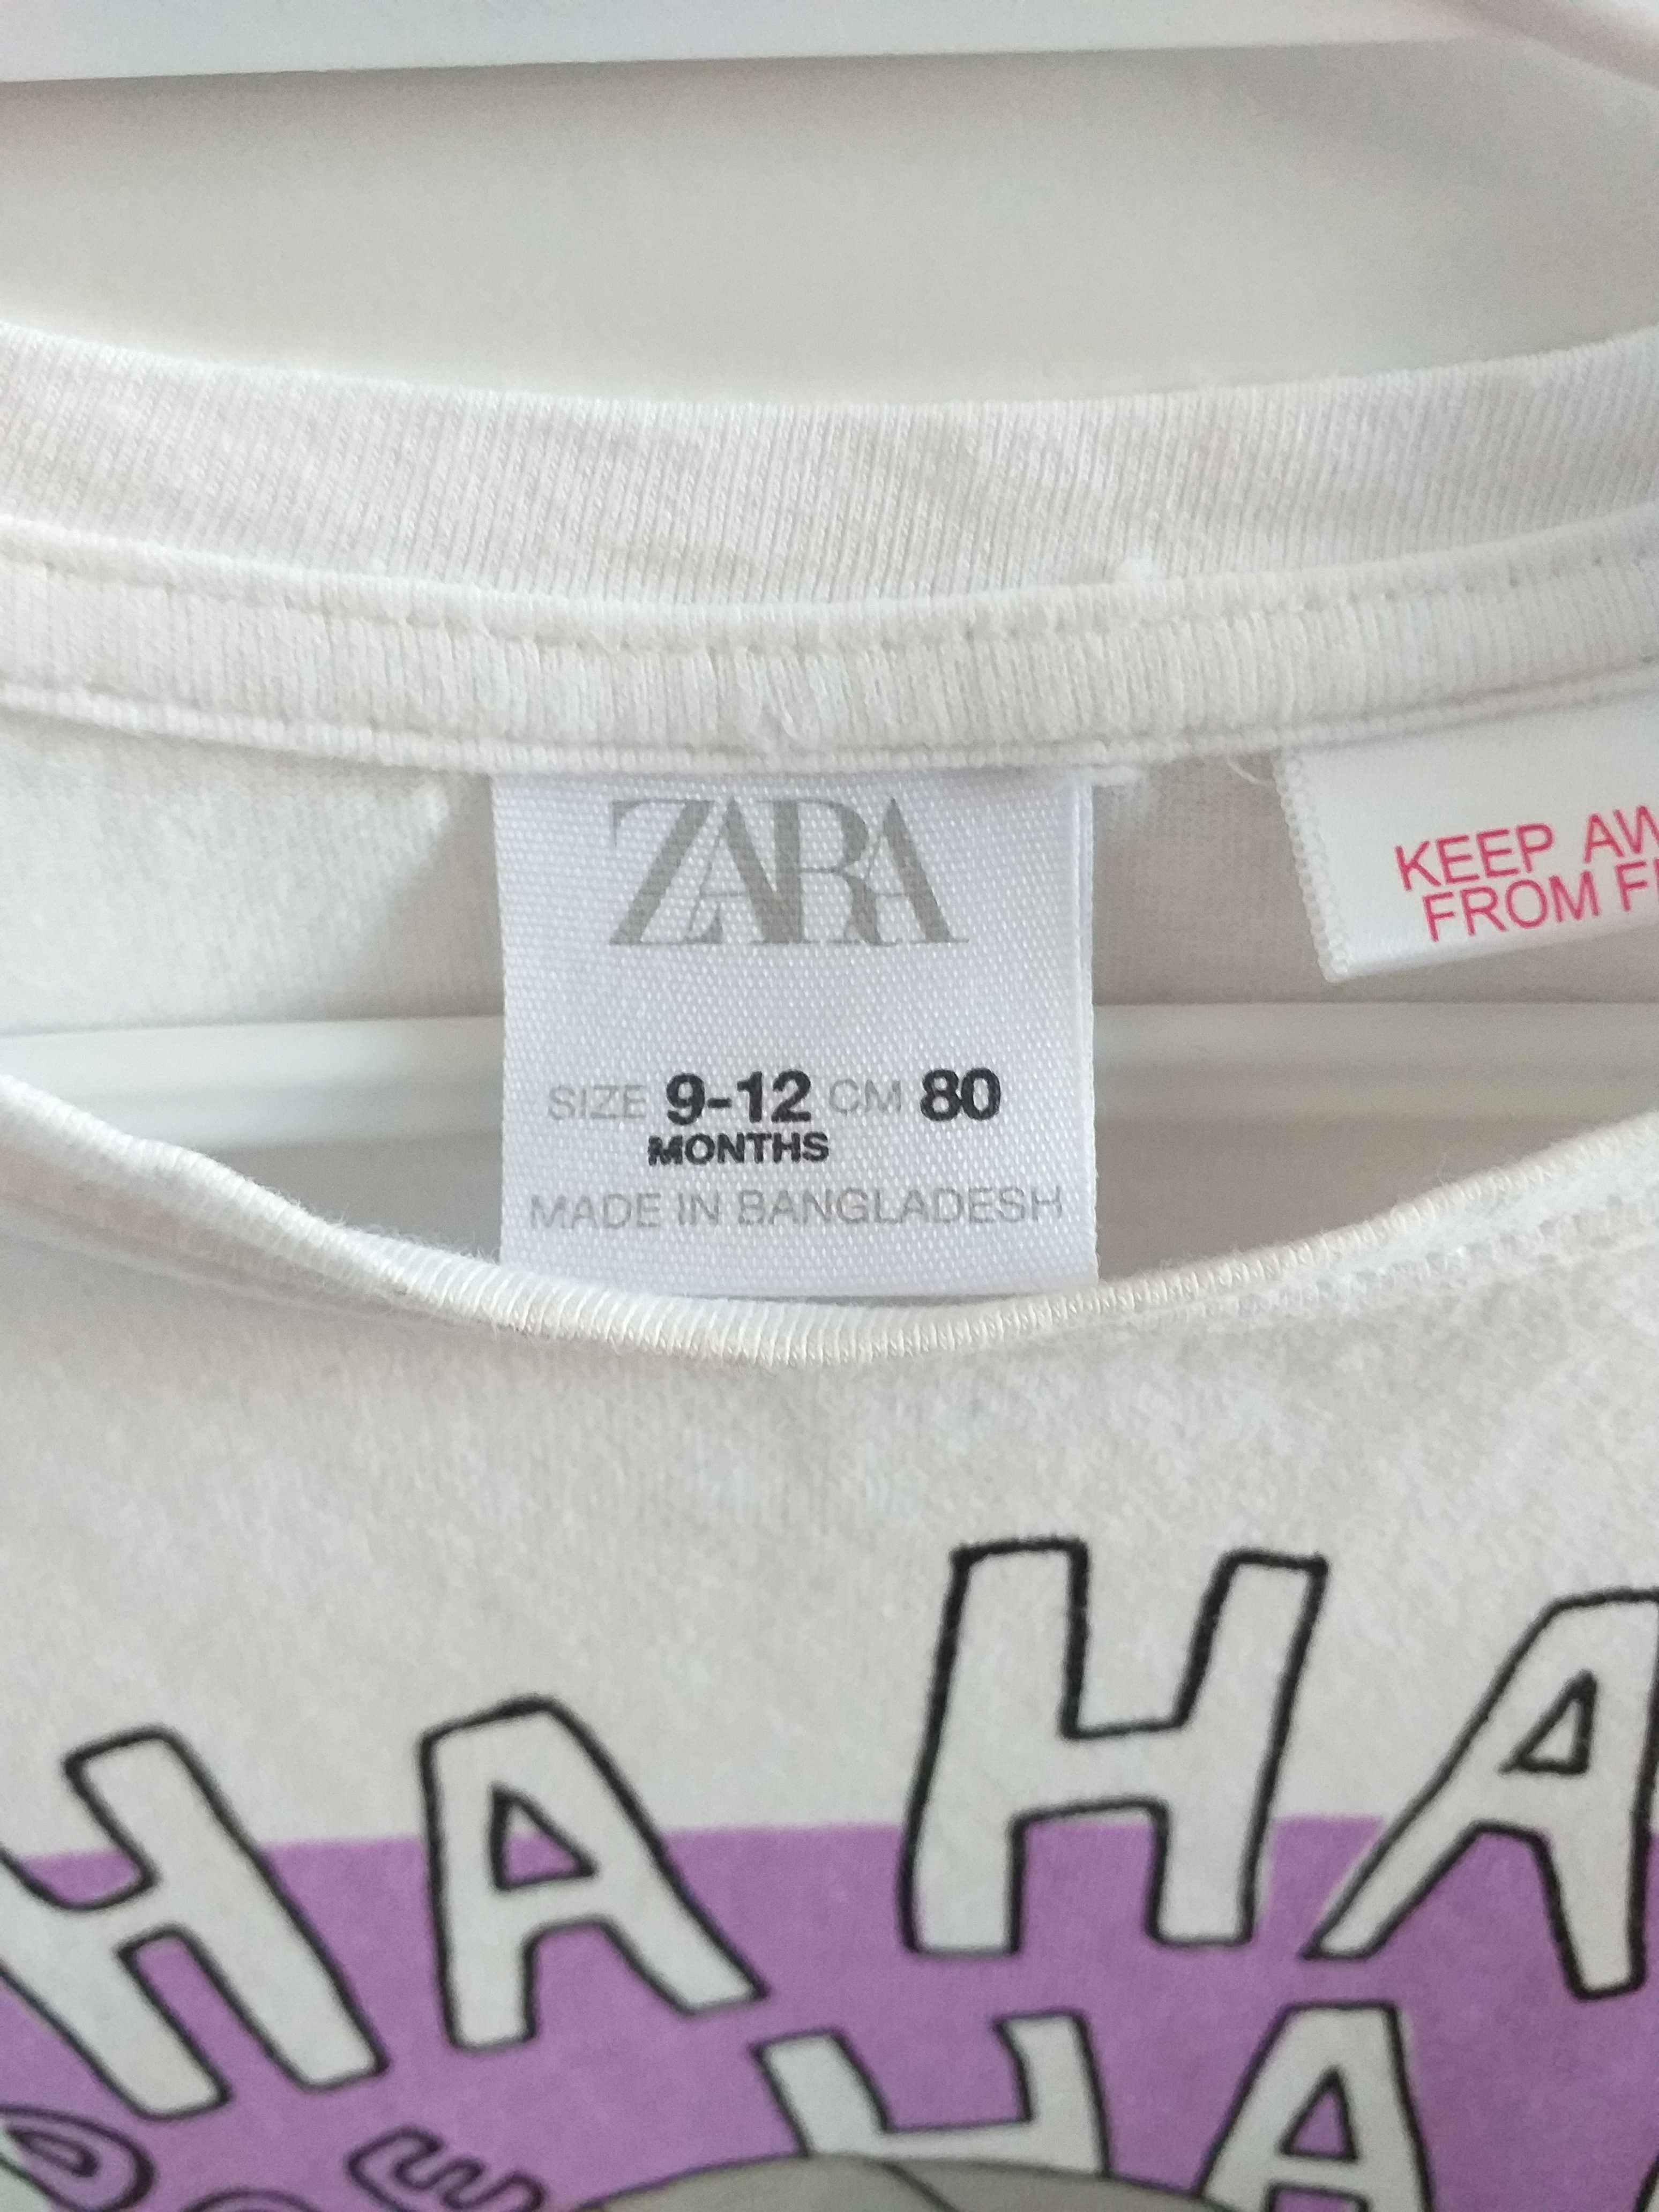 Bluzki dla dziewczynki Zara. Rozmiar 86